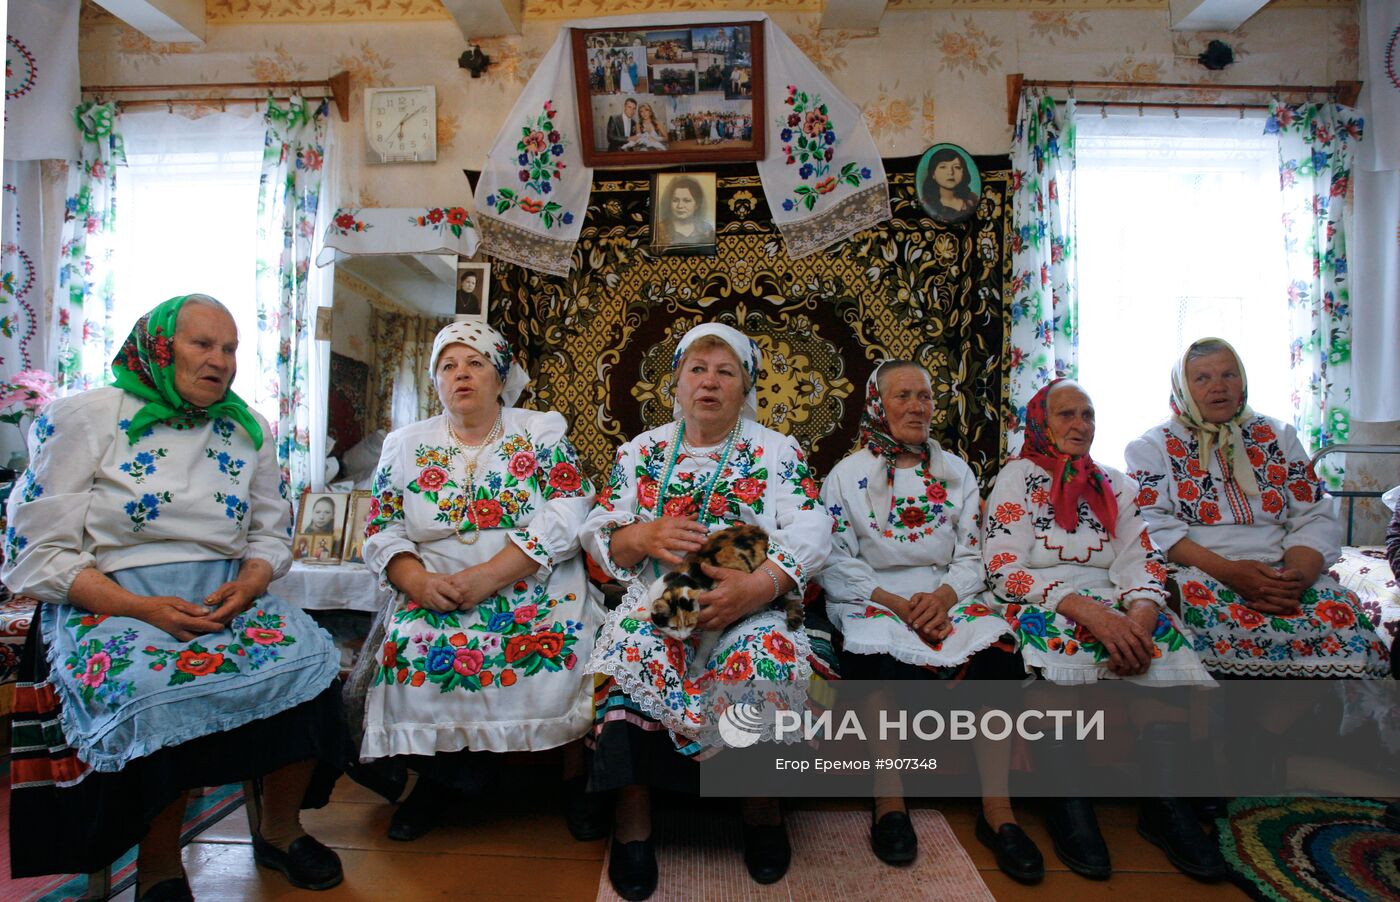 Подготовка к народному празднику Юрье в Гомельской области